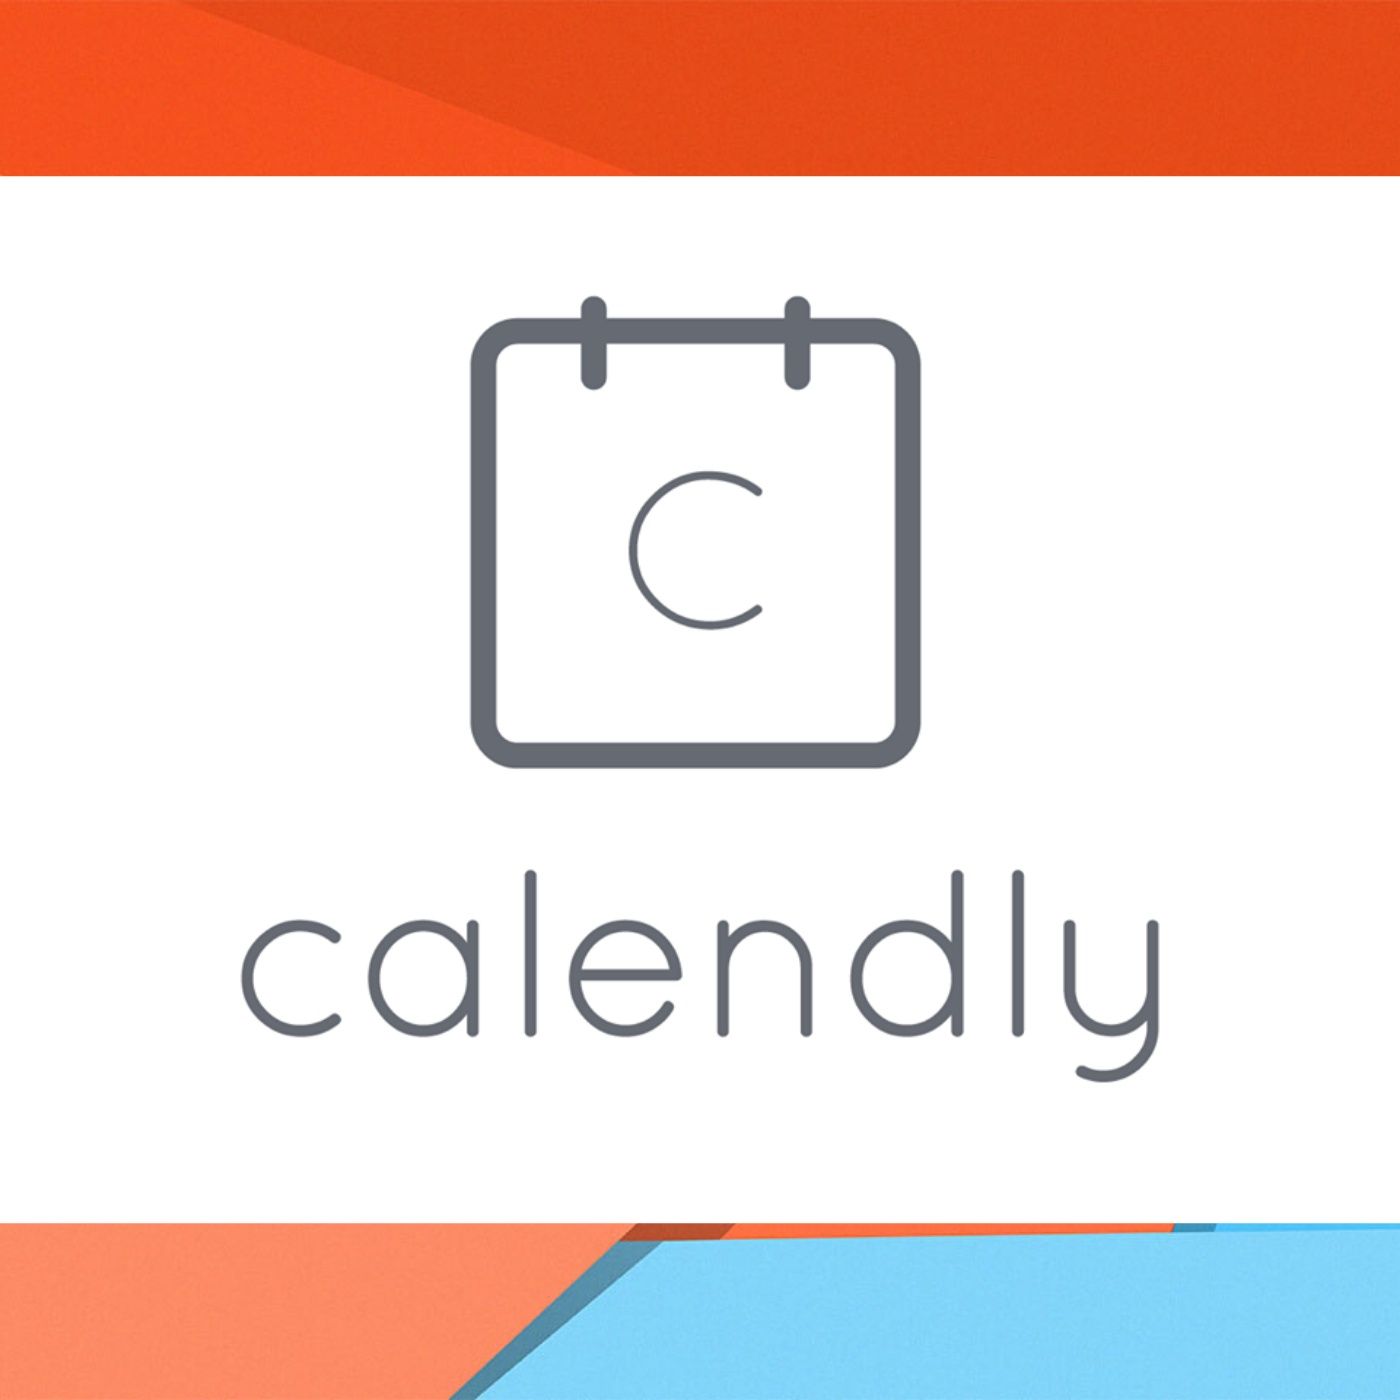 Prendere appuntamenti con Calendly integrato con Google Calendar